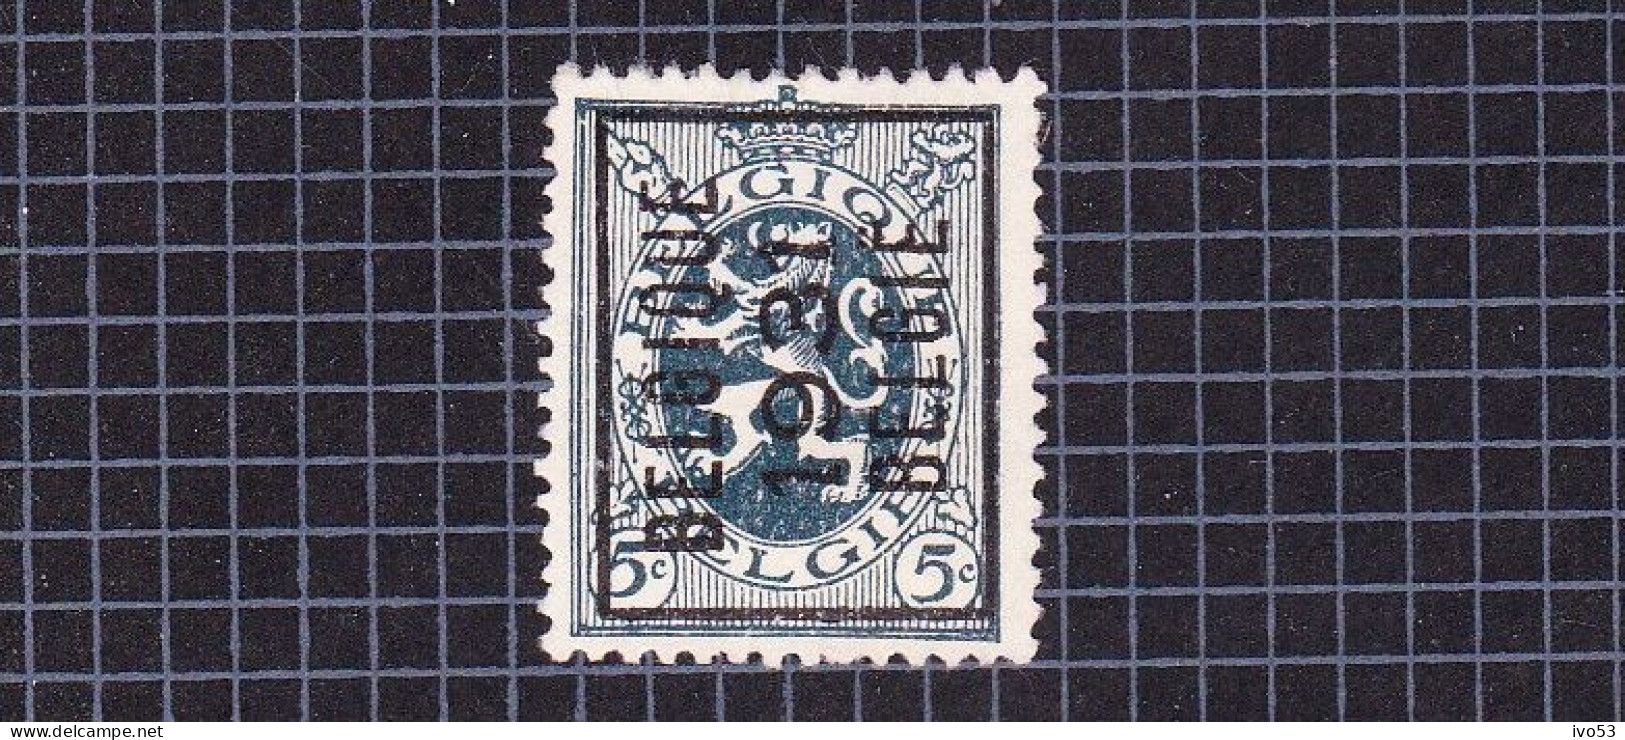 Heraldieke Leeuw:nr 279(*) Zonder Gom,voorafstempeling:Belgique 1931 Belgie. - Typo Precancels 1929-37 (Heraldic Lion)